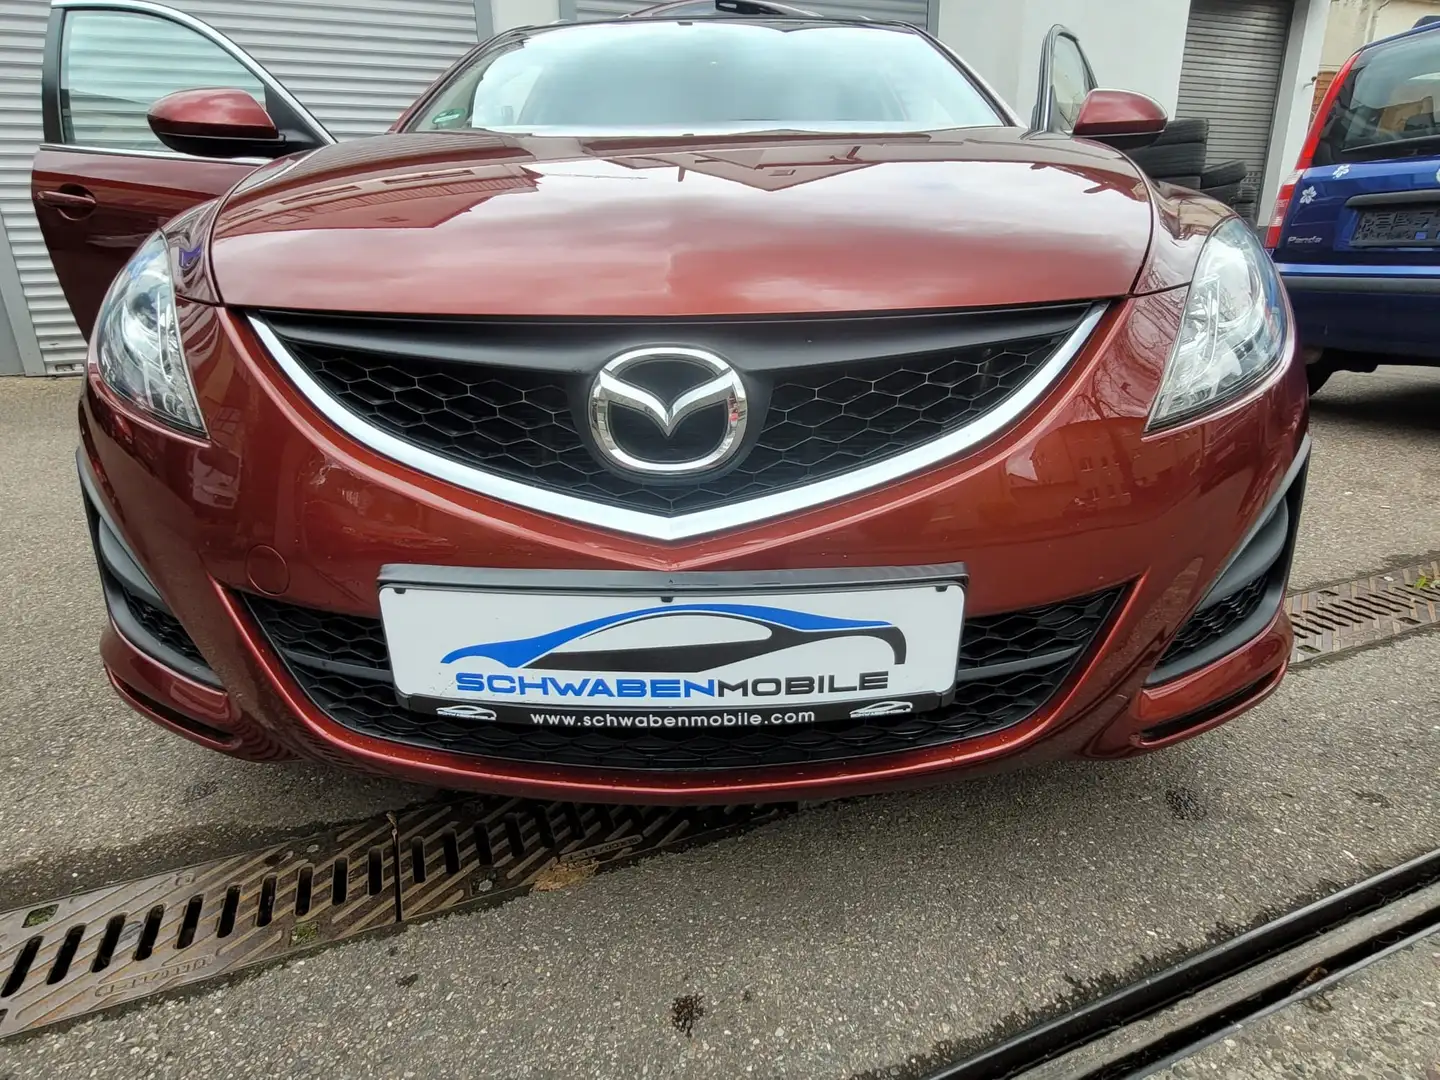 Mazda 6 Kombi 2.0 Exclusive KLIMA / ALU / PDC / NAVI gebraucht kaufen in  Singen Preis 7580 eur - Int.Nr.: SI-603 VERKAUFT